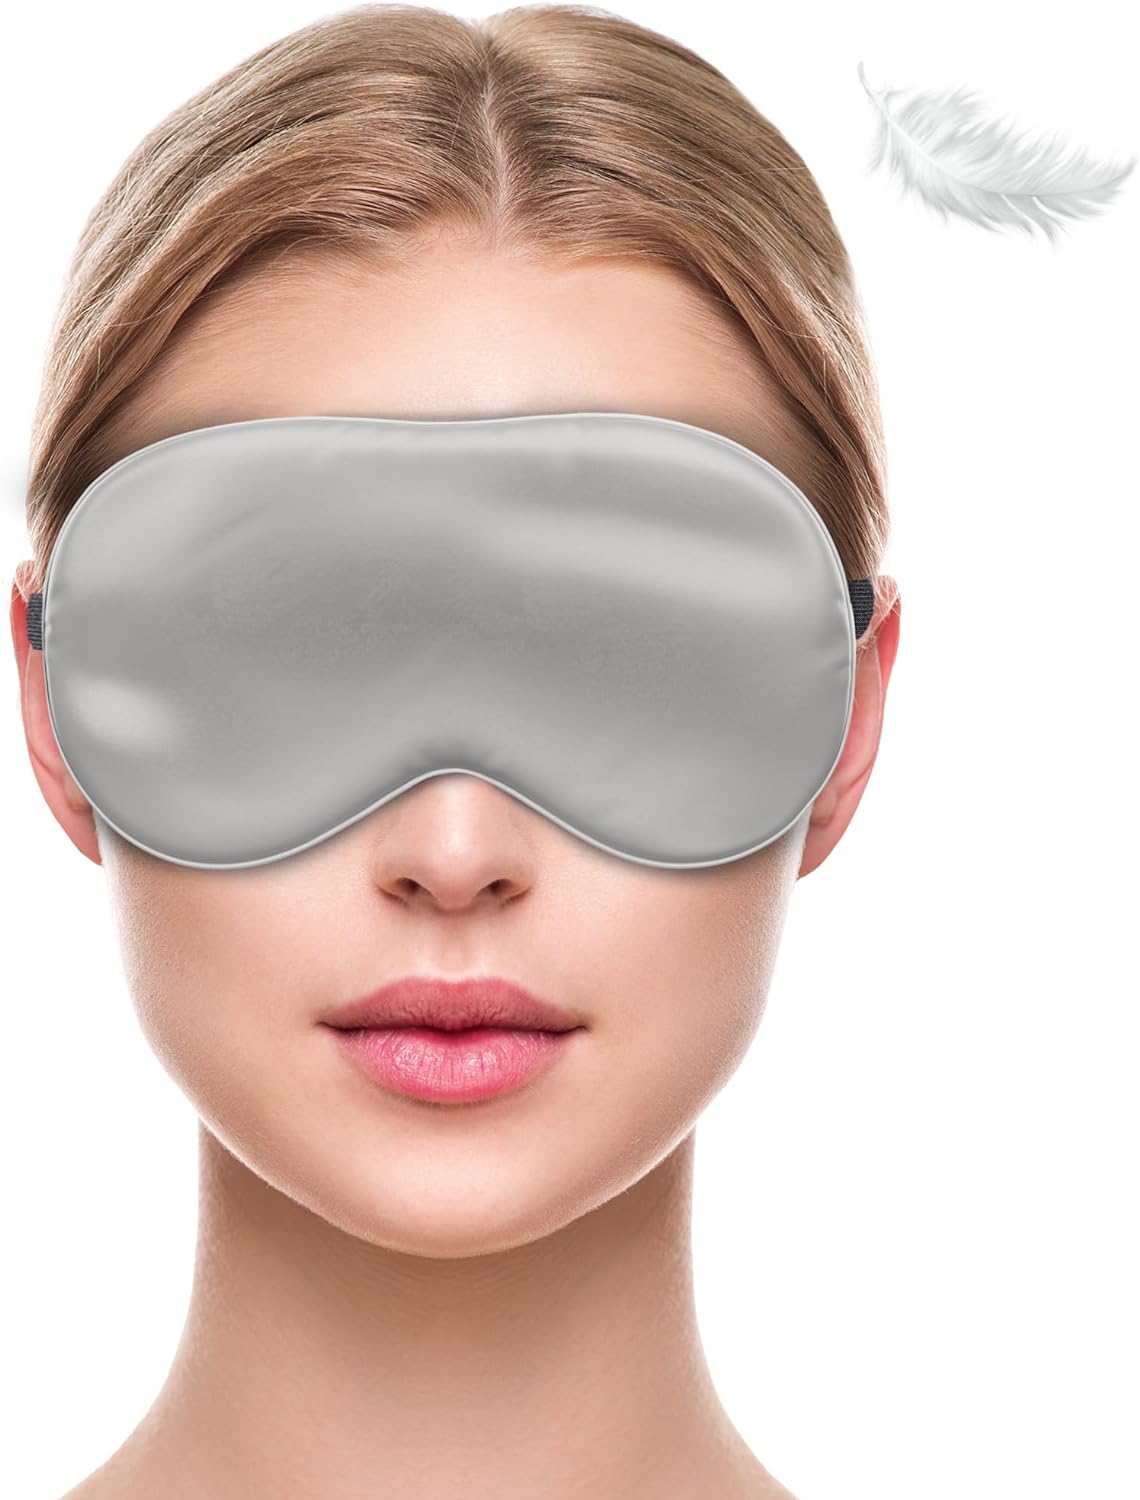 liebesfreunde® Augenmaske aus 100% echter Seide - bequem & weich - Schlafmaske für Frauen und Männer - Augenbinde, grau